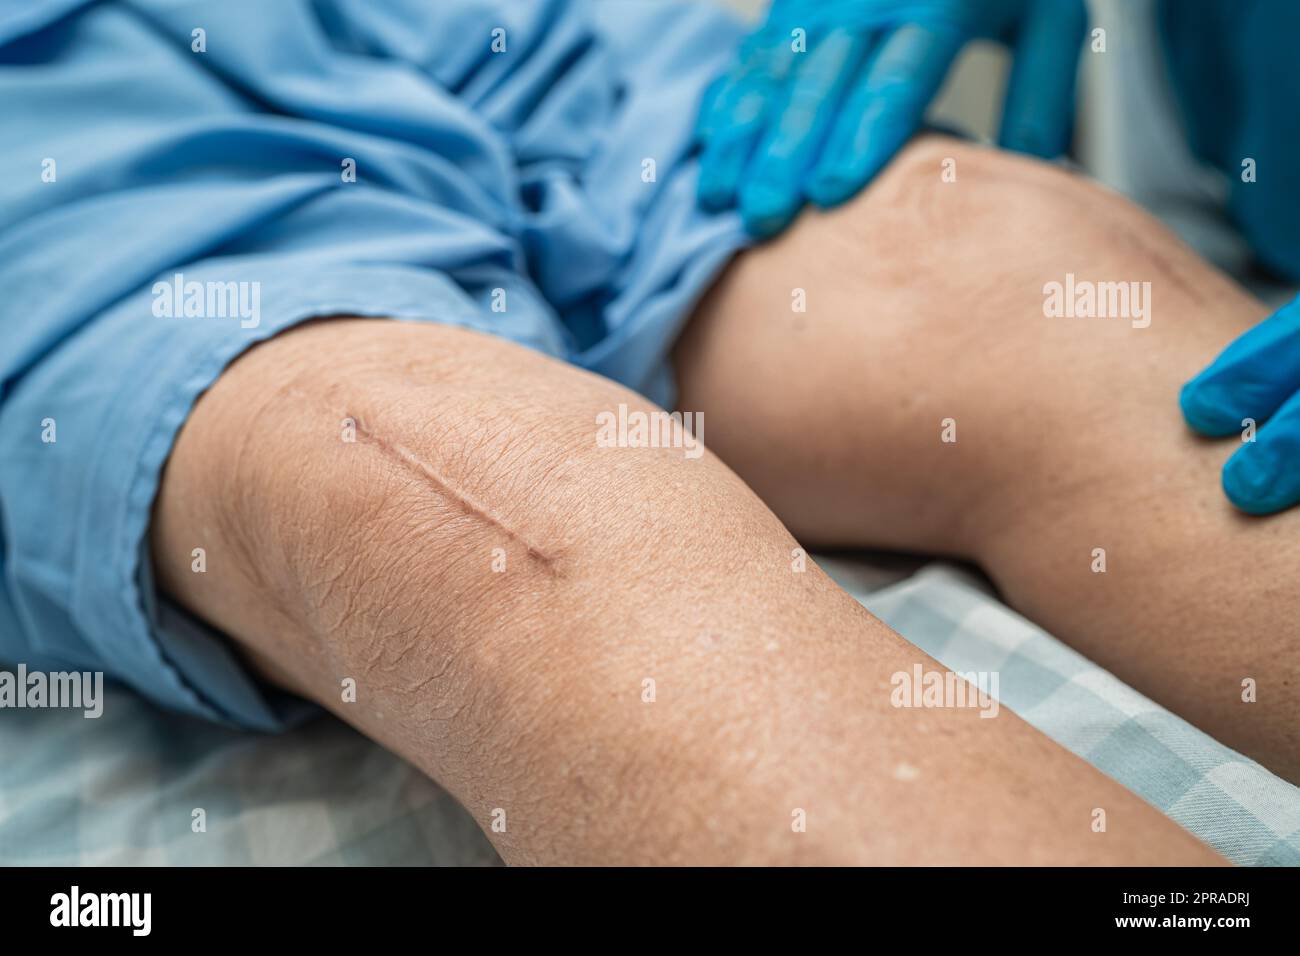 Asiatische ältere oder ältere alte Dame Frau Patientin zeigen ihre Narben chirurgischen totalen Kniegelenkersatz Naht Wundchirurgie Arthroplastik auf dem Bett in Krankenpflege-Station, gesund starke medizinische Konzept. Stockfoto